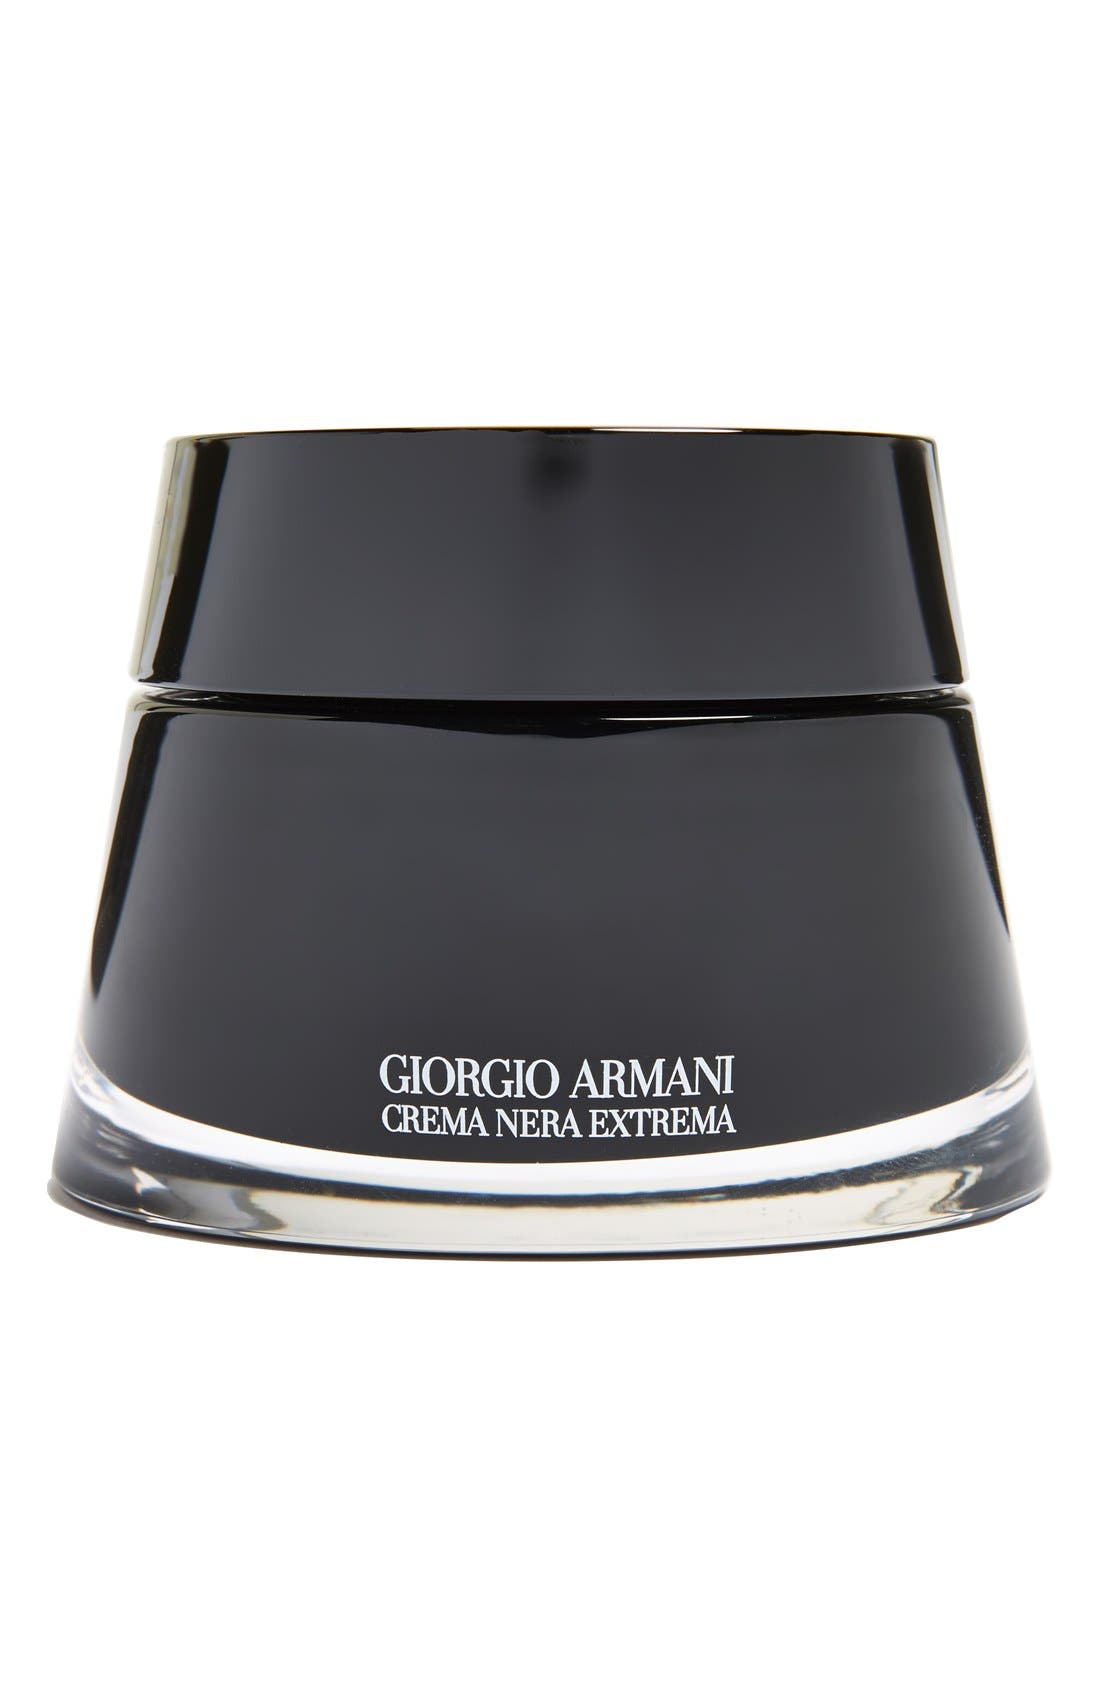 giorgio armani crema nera extrema light cream